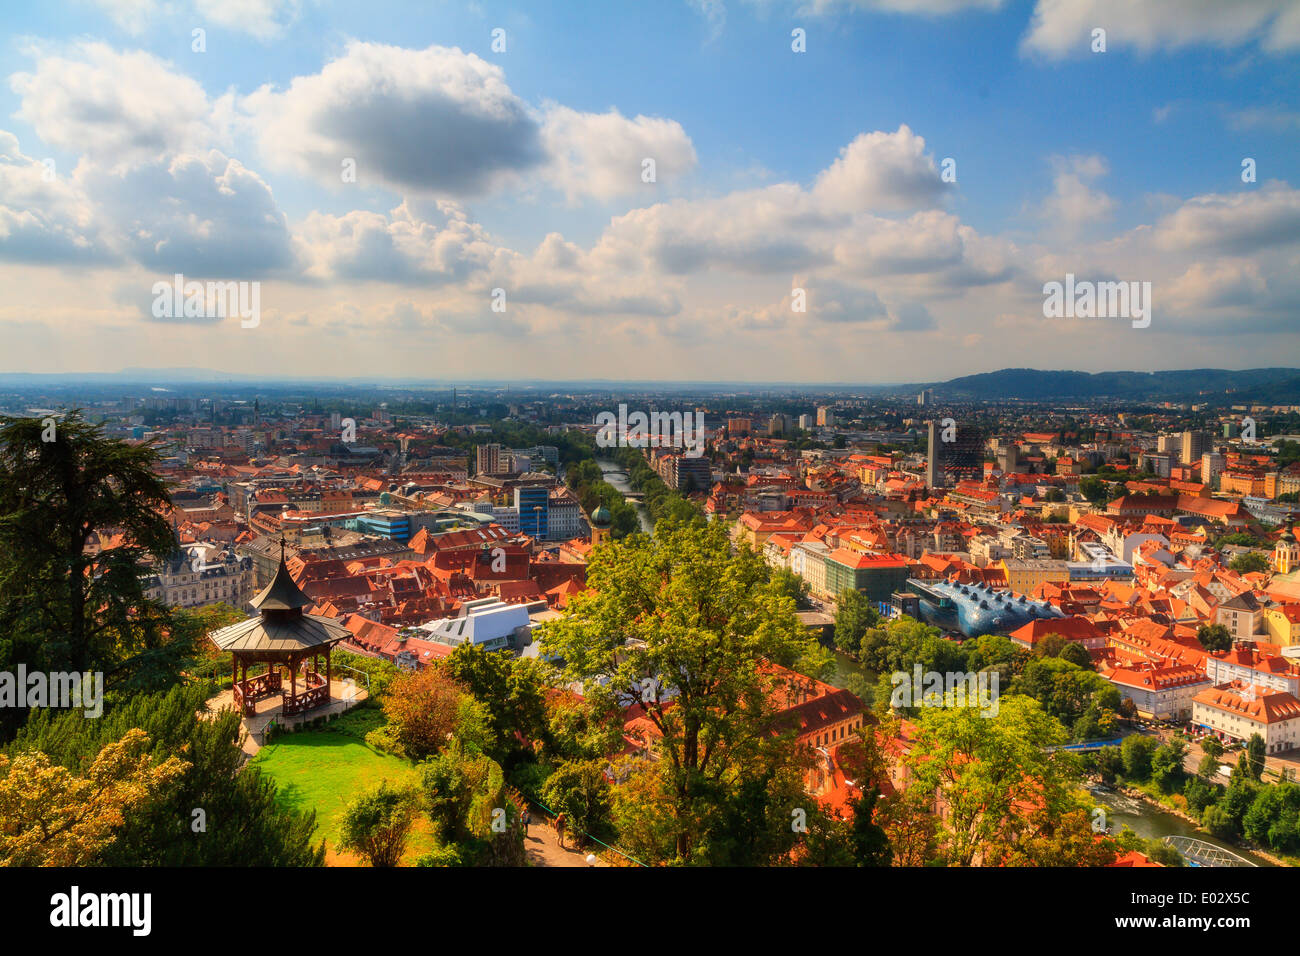 Panorama der Stadt Graz. Steirische österreichischen Stadt Graz an einem warmen Tag im September. Schöne warme Farben. Panoramaformat Stockfoto